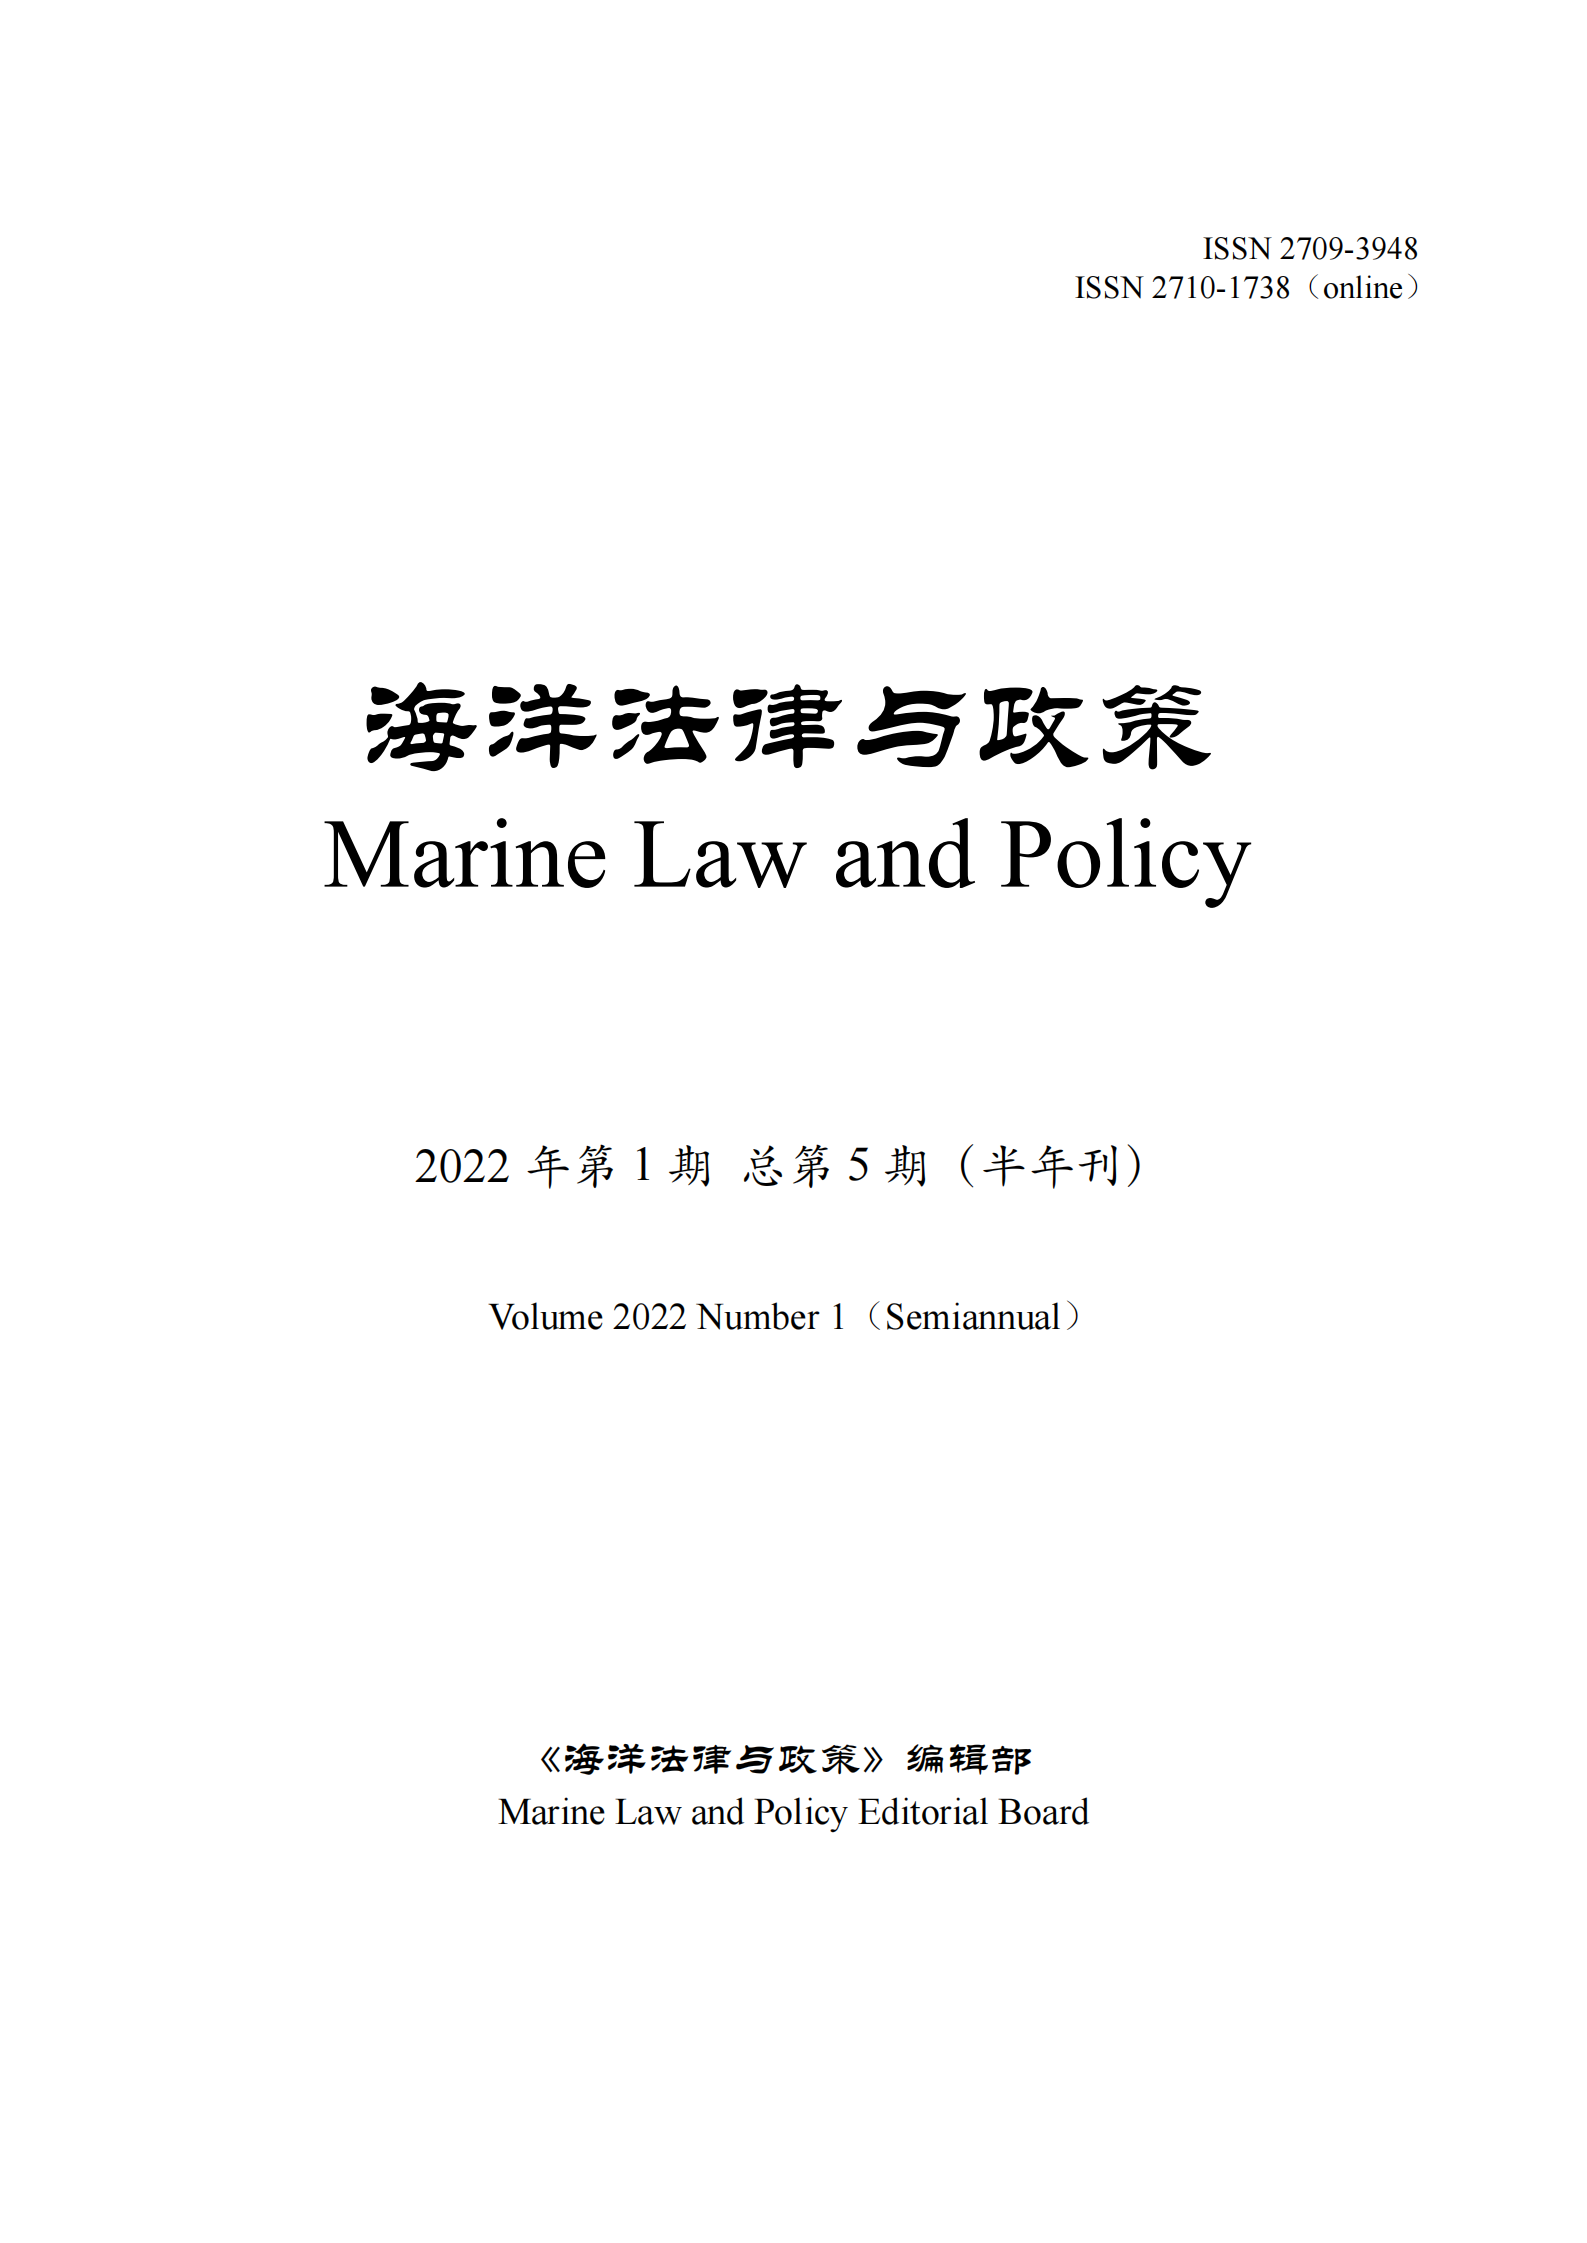 提取自《海洋法律与政策》总第5期.png